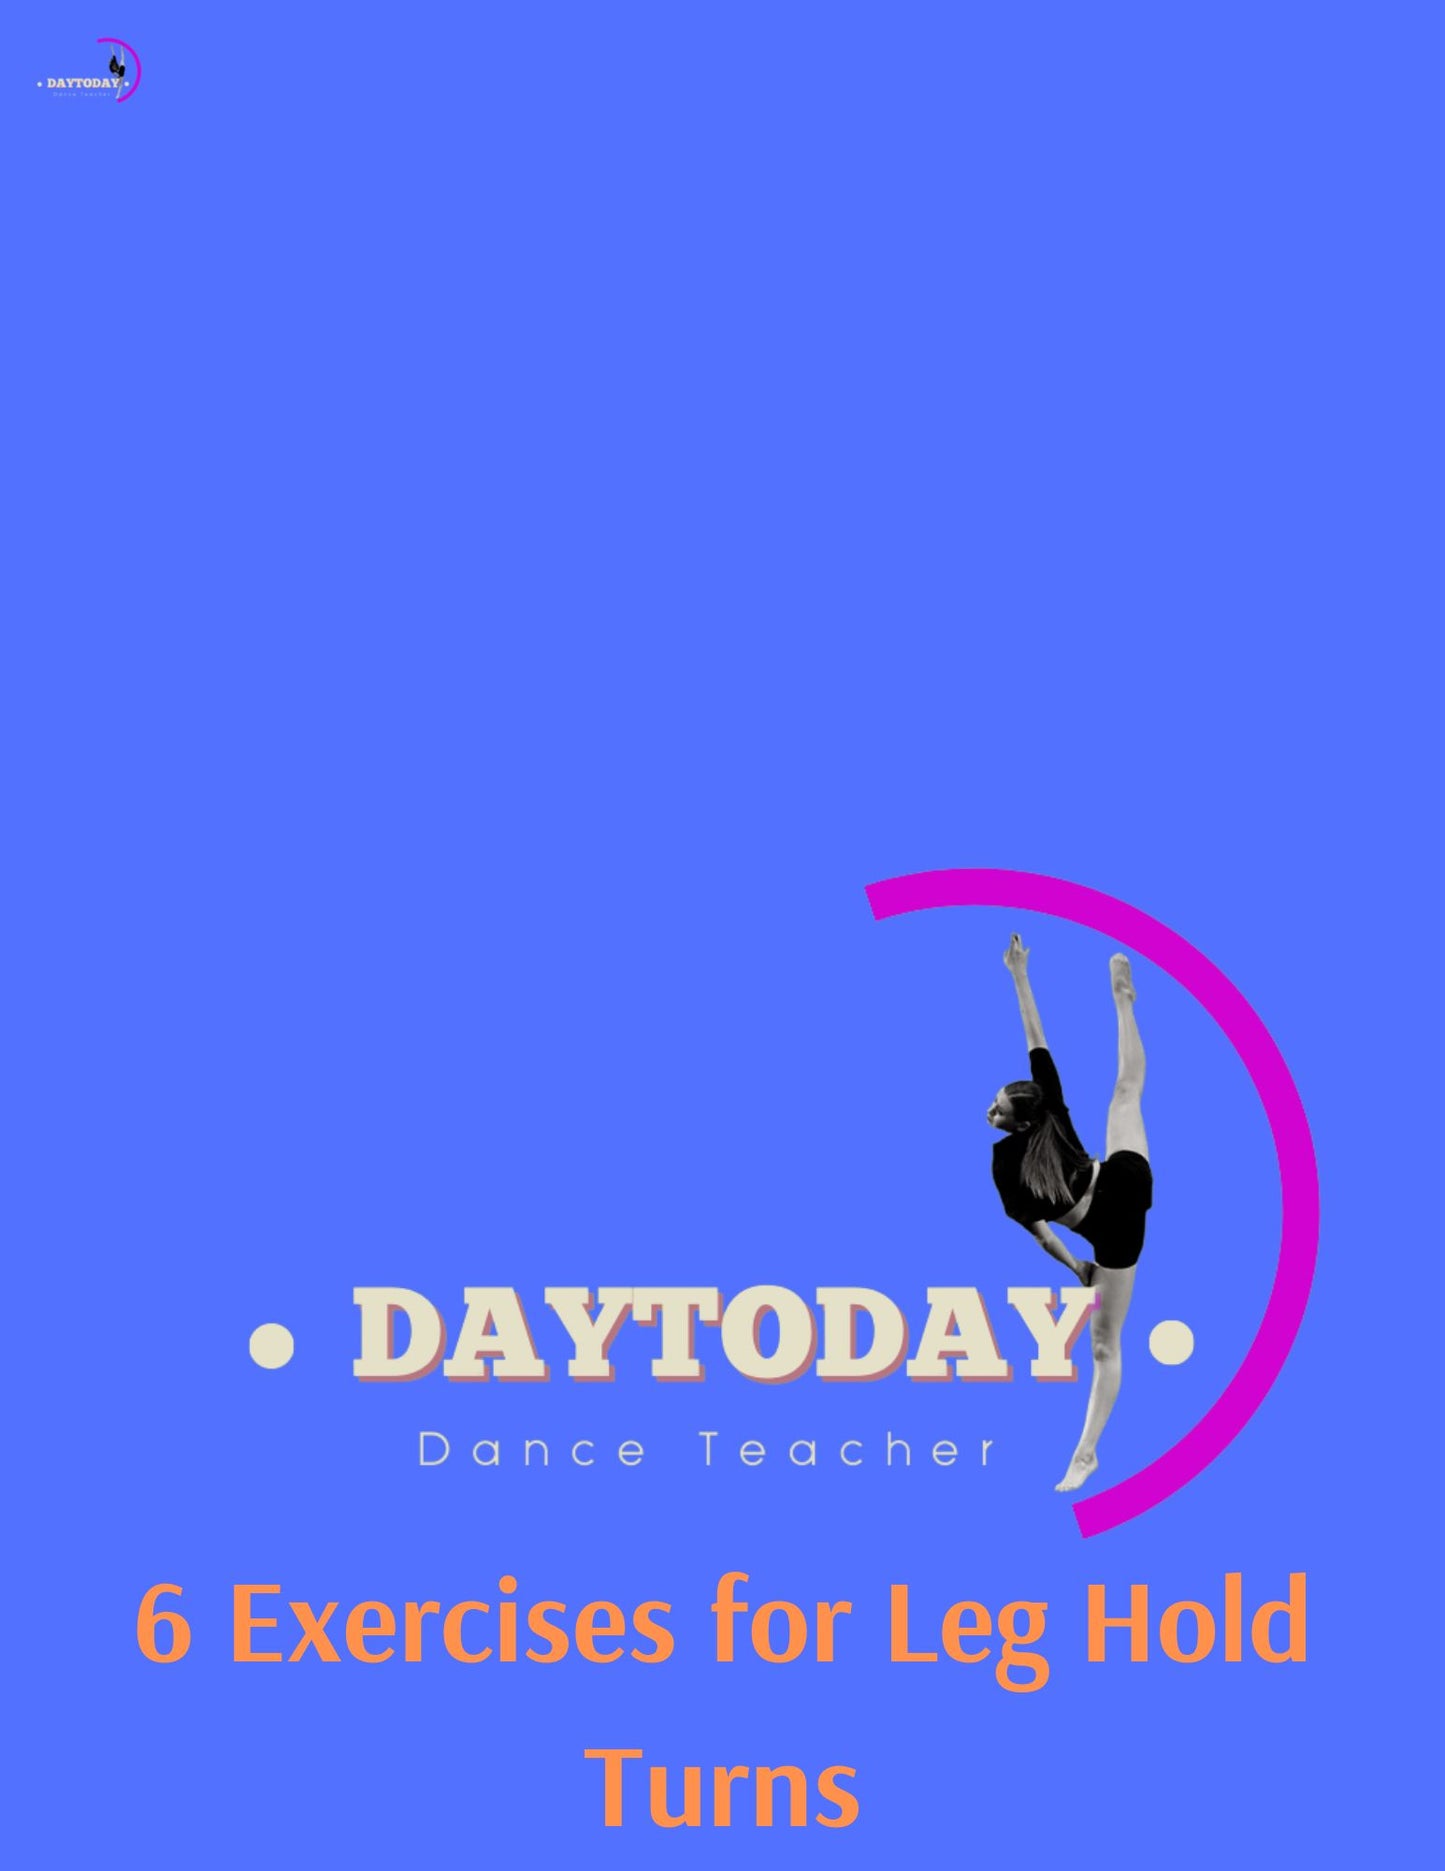 6 Exercises for Leg hold Turns